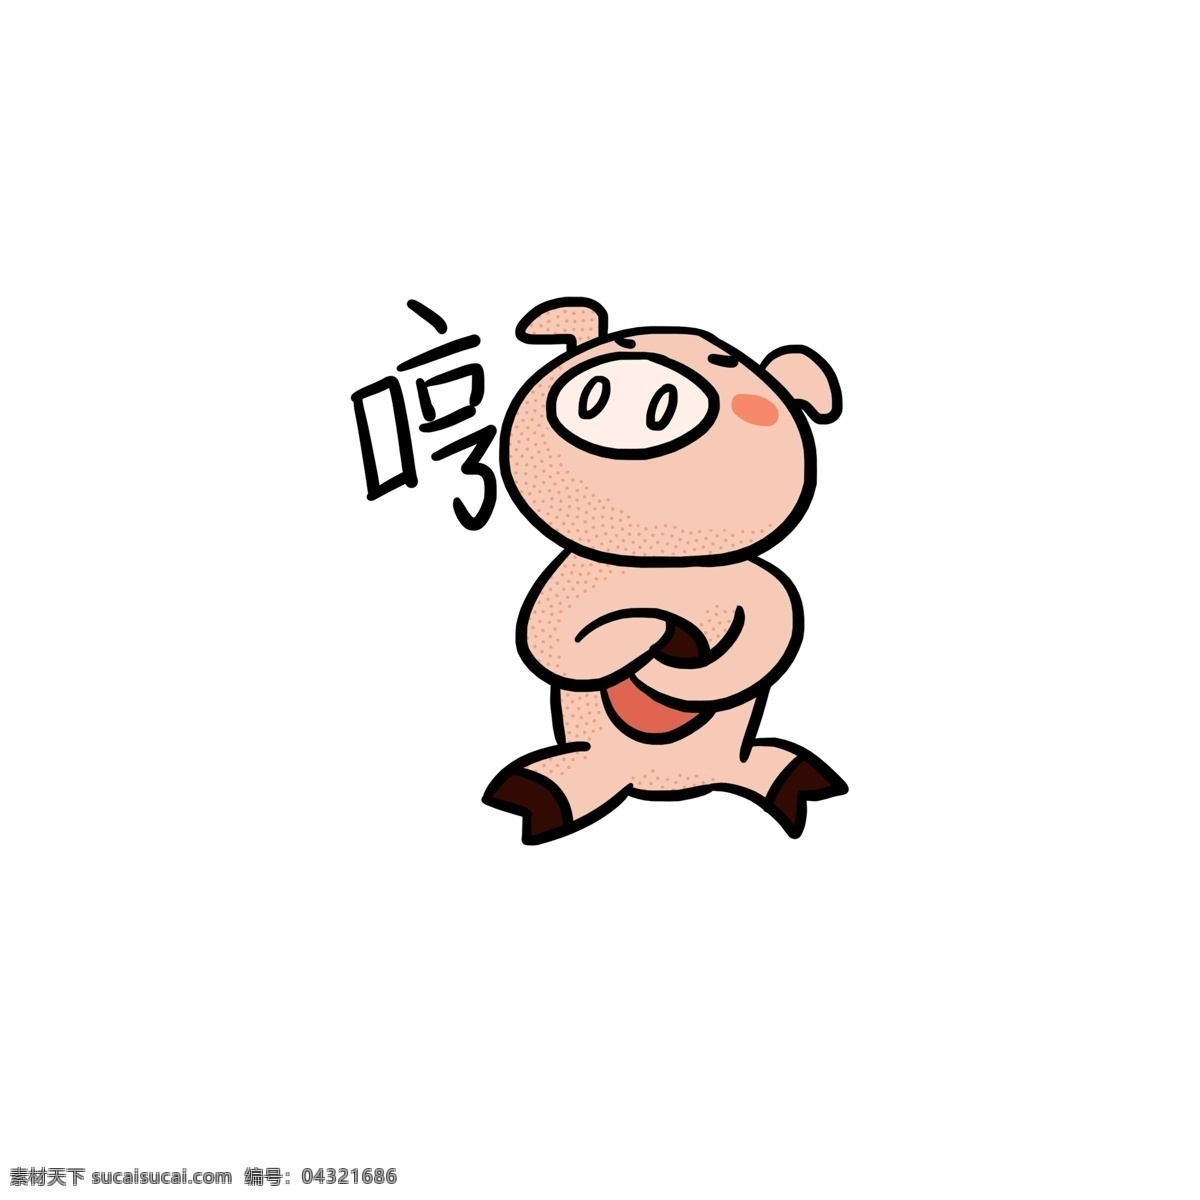 2019 春节 傲 娇 猪 卡通 可爱 插画 原创 手绘 图标 猪年 傲娇 元素 动物 形象 表情 贴纸